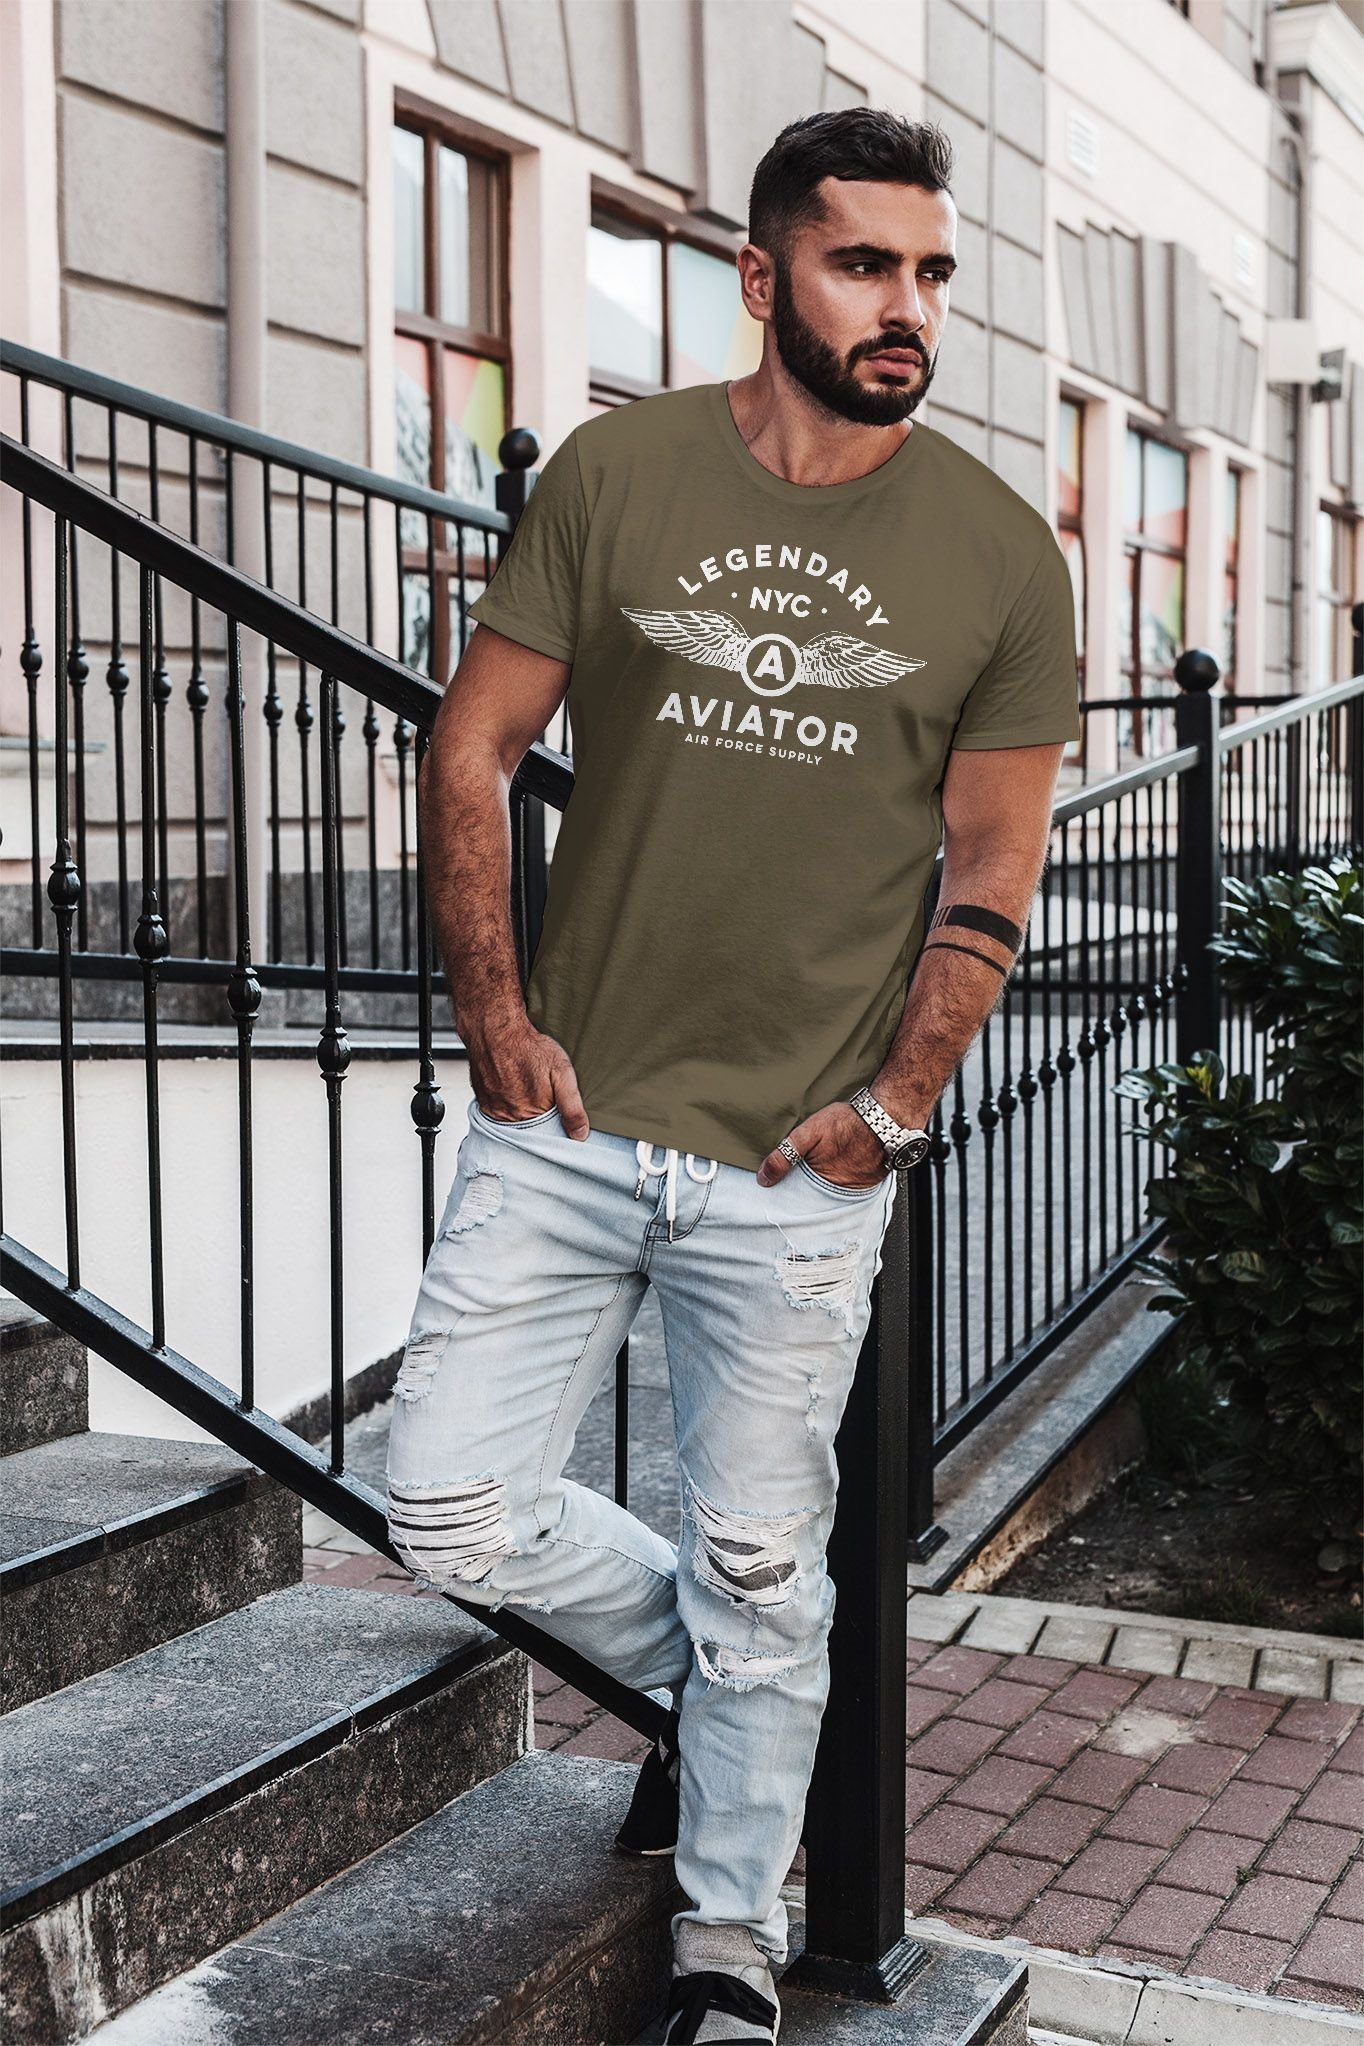 Print NYC Force Flügel Air Legendary grün mit Print-Shirt Neverless Streetstyle Herren Neverless® Luftwaffe T-Shirt Fashion Aviator